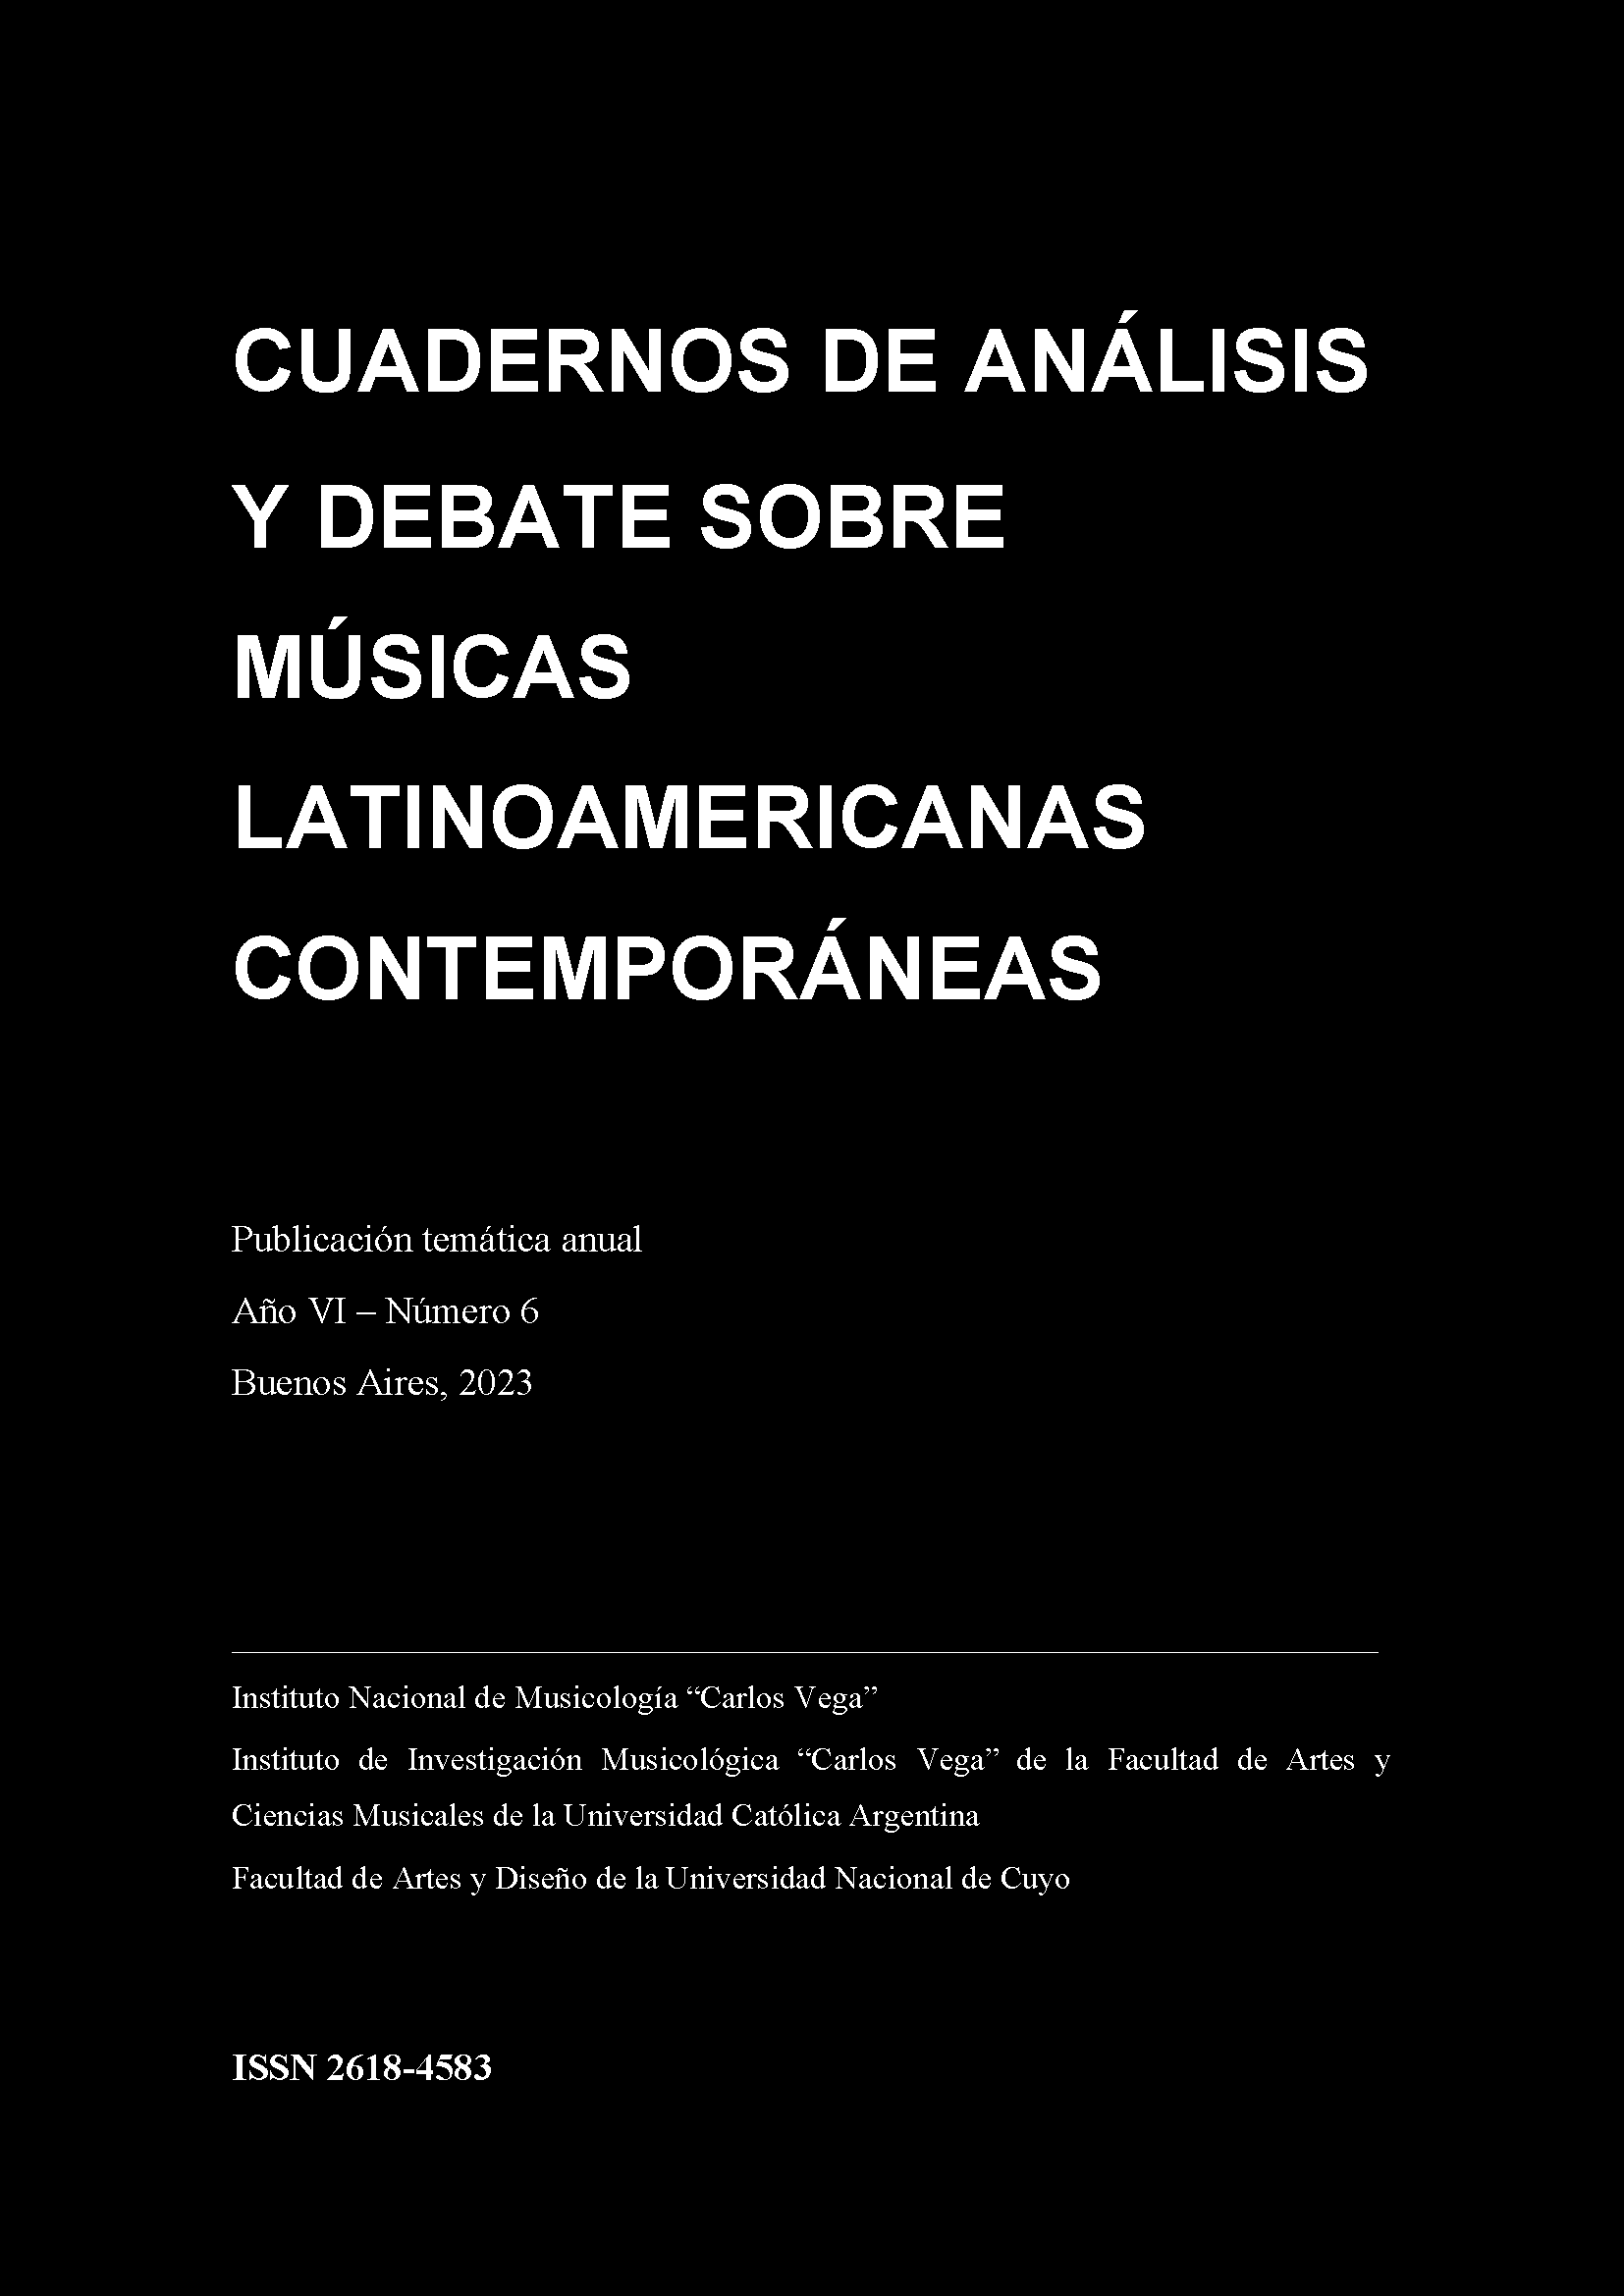 Cuadernos de Análisis y Debate sobre Músicas Latinoamericanas Contemporáneas